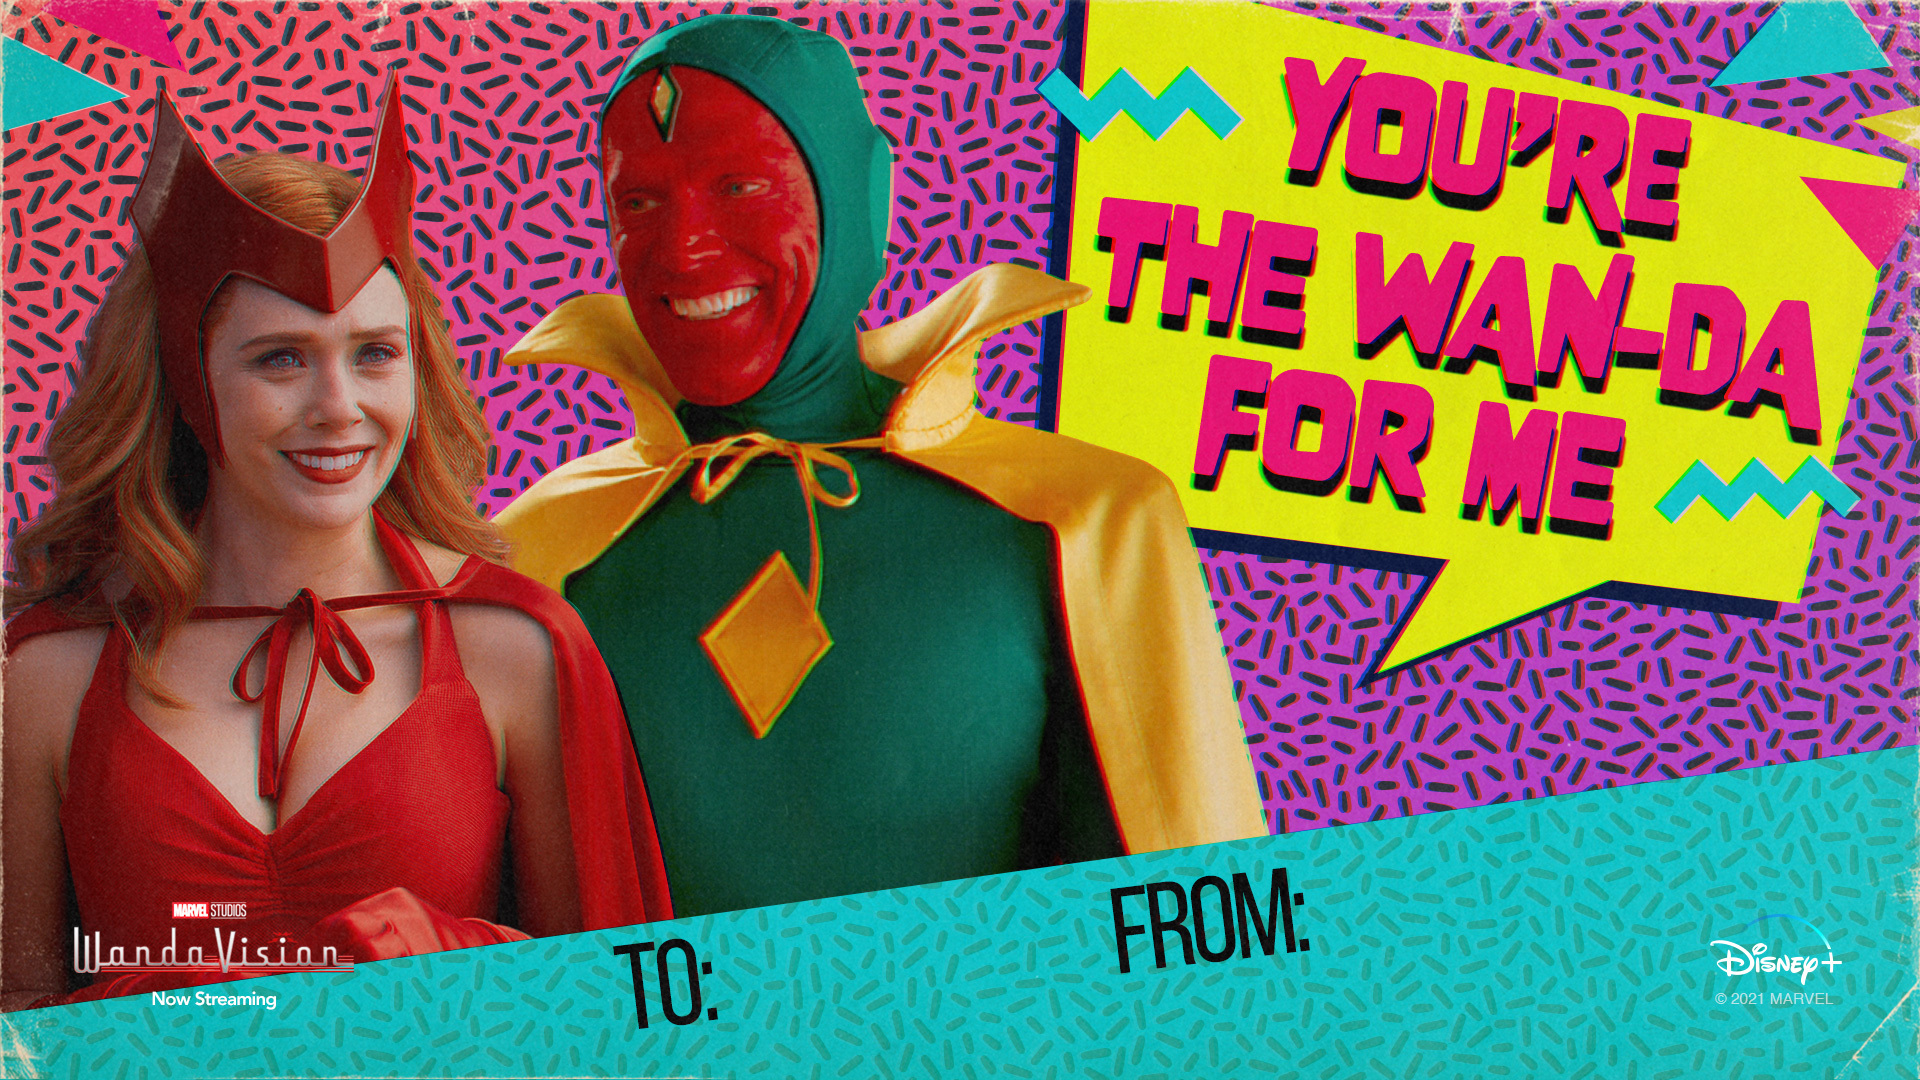 Celebra San Valentín con las postales de WandaVision